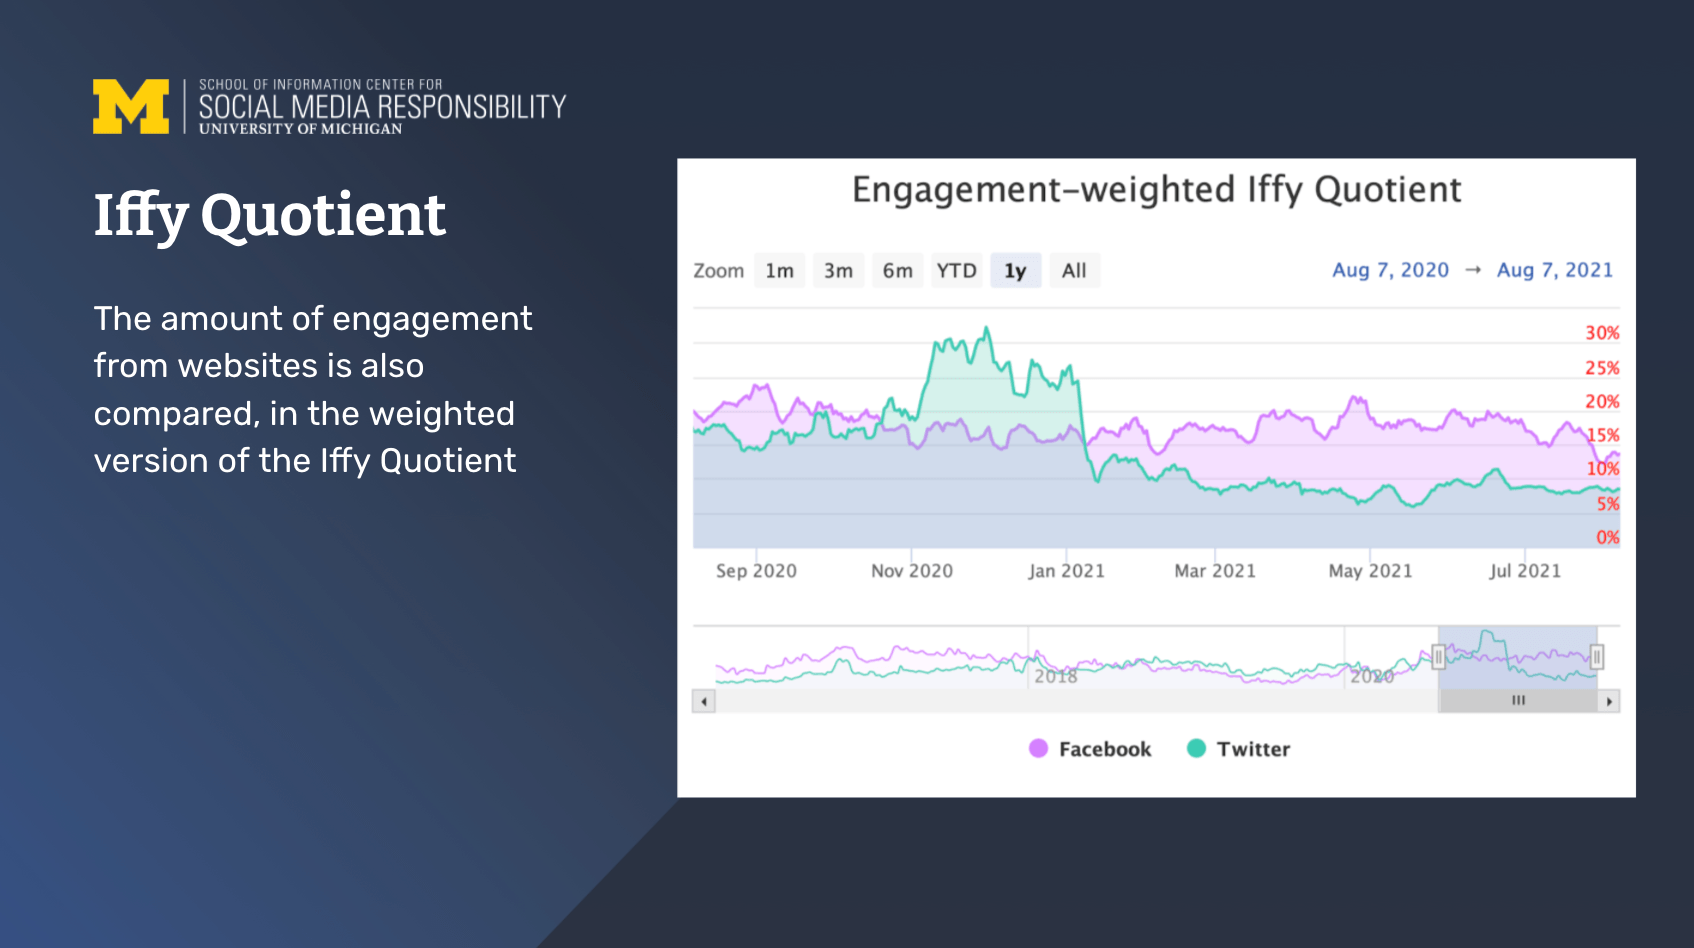 Slide describing iffy quotient engagement